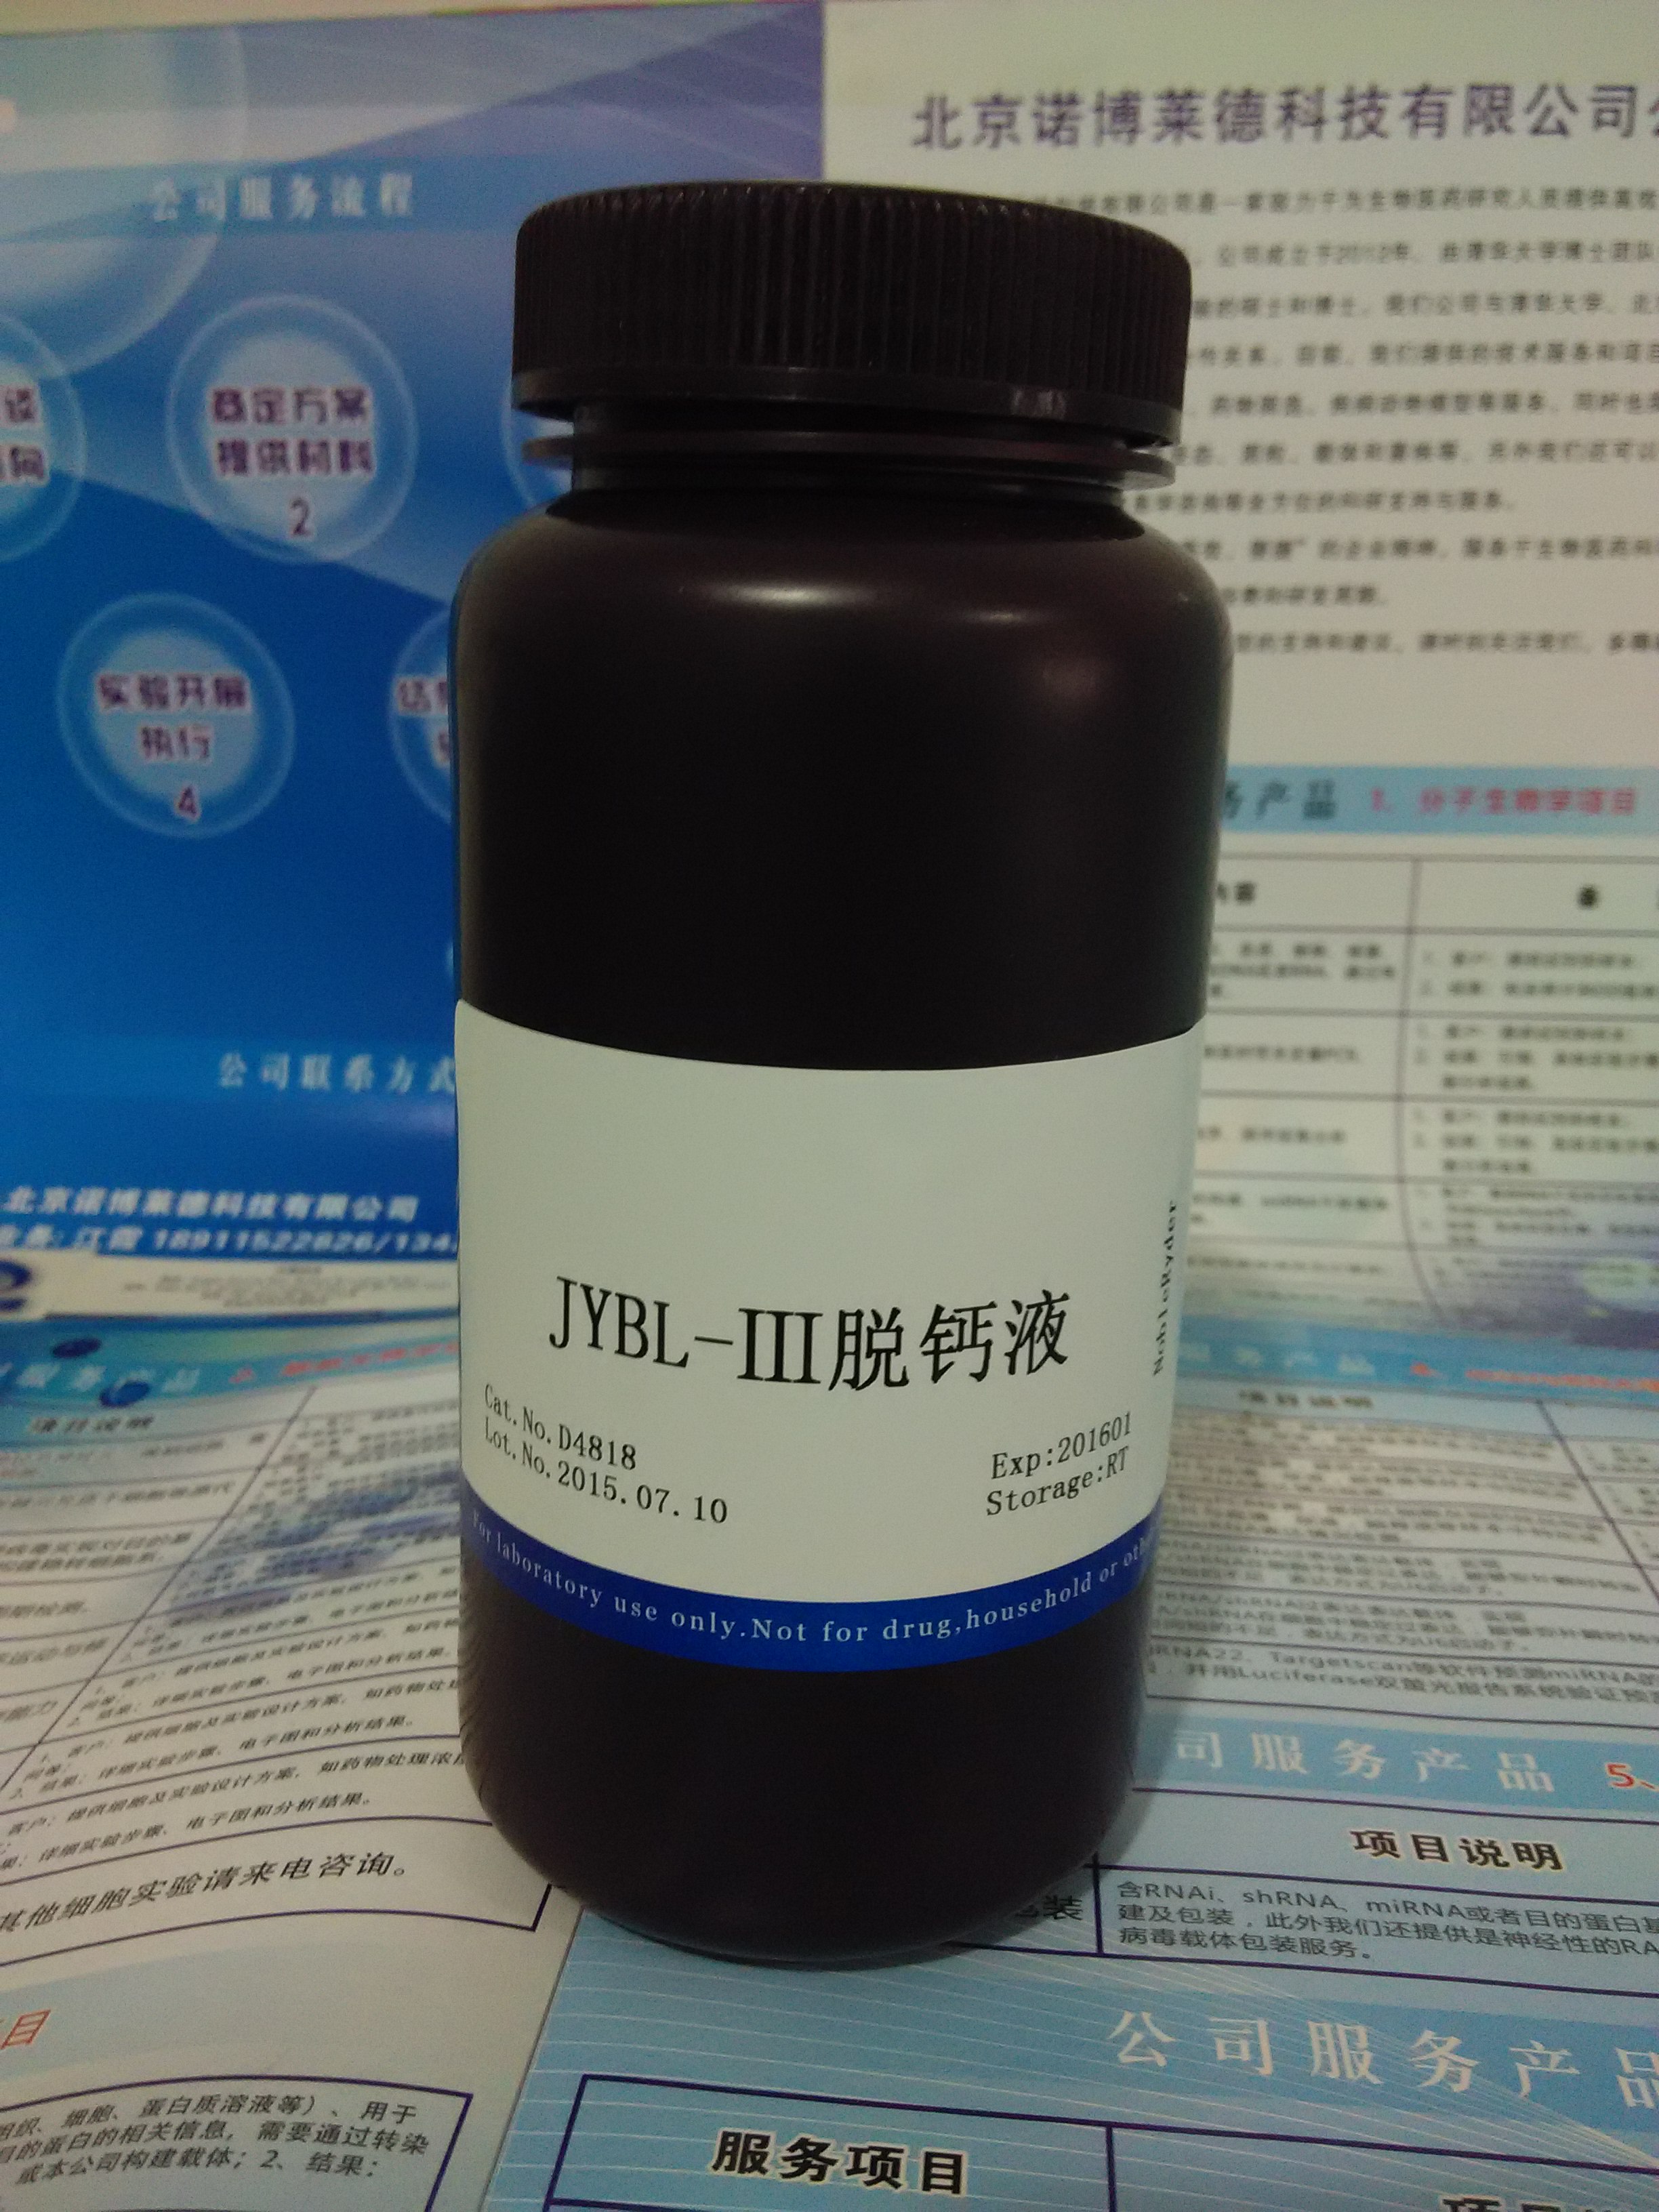 供应JYBL-Ⅲ脱钙液 NobleRyder D4818 缓冲液 脱钙液 量大更优惠 质量保证 现货供应 500ml